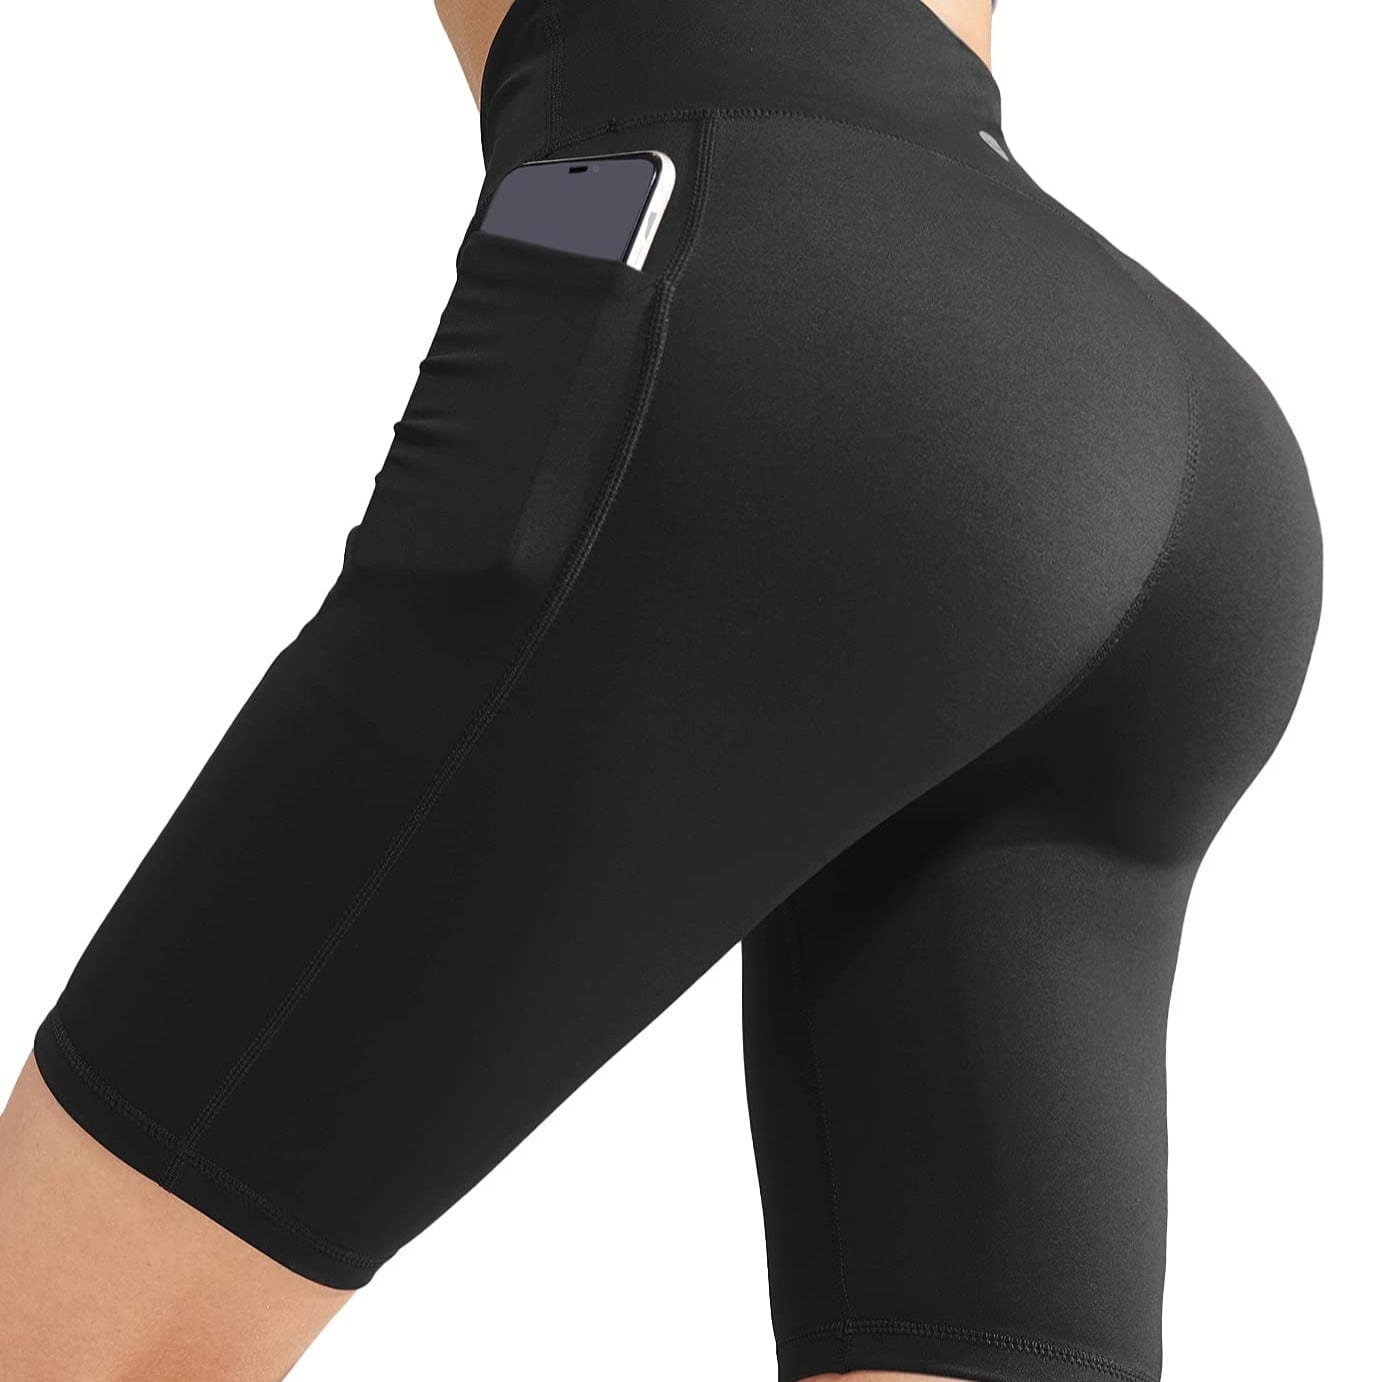 Women's High Waist Yoga Tummy Control Stretch Shorts, 8 Inch - Black / S